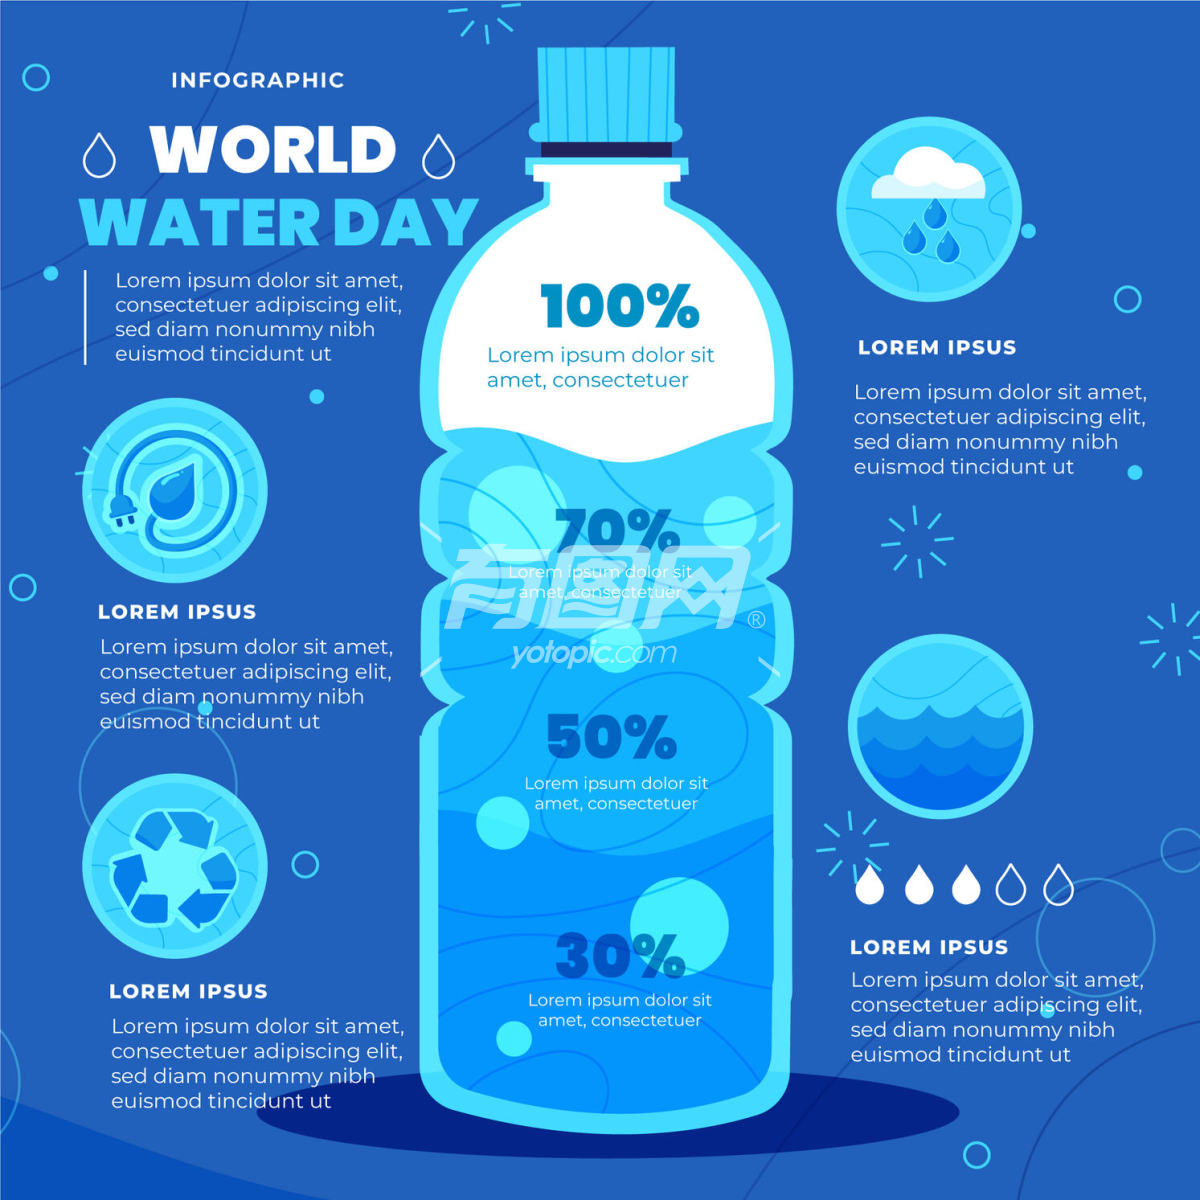 世界水日信息图